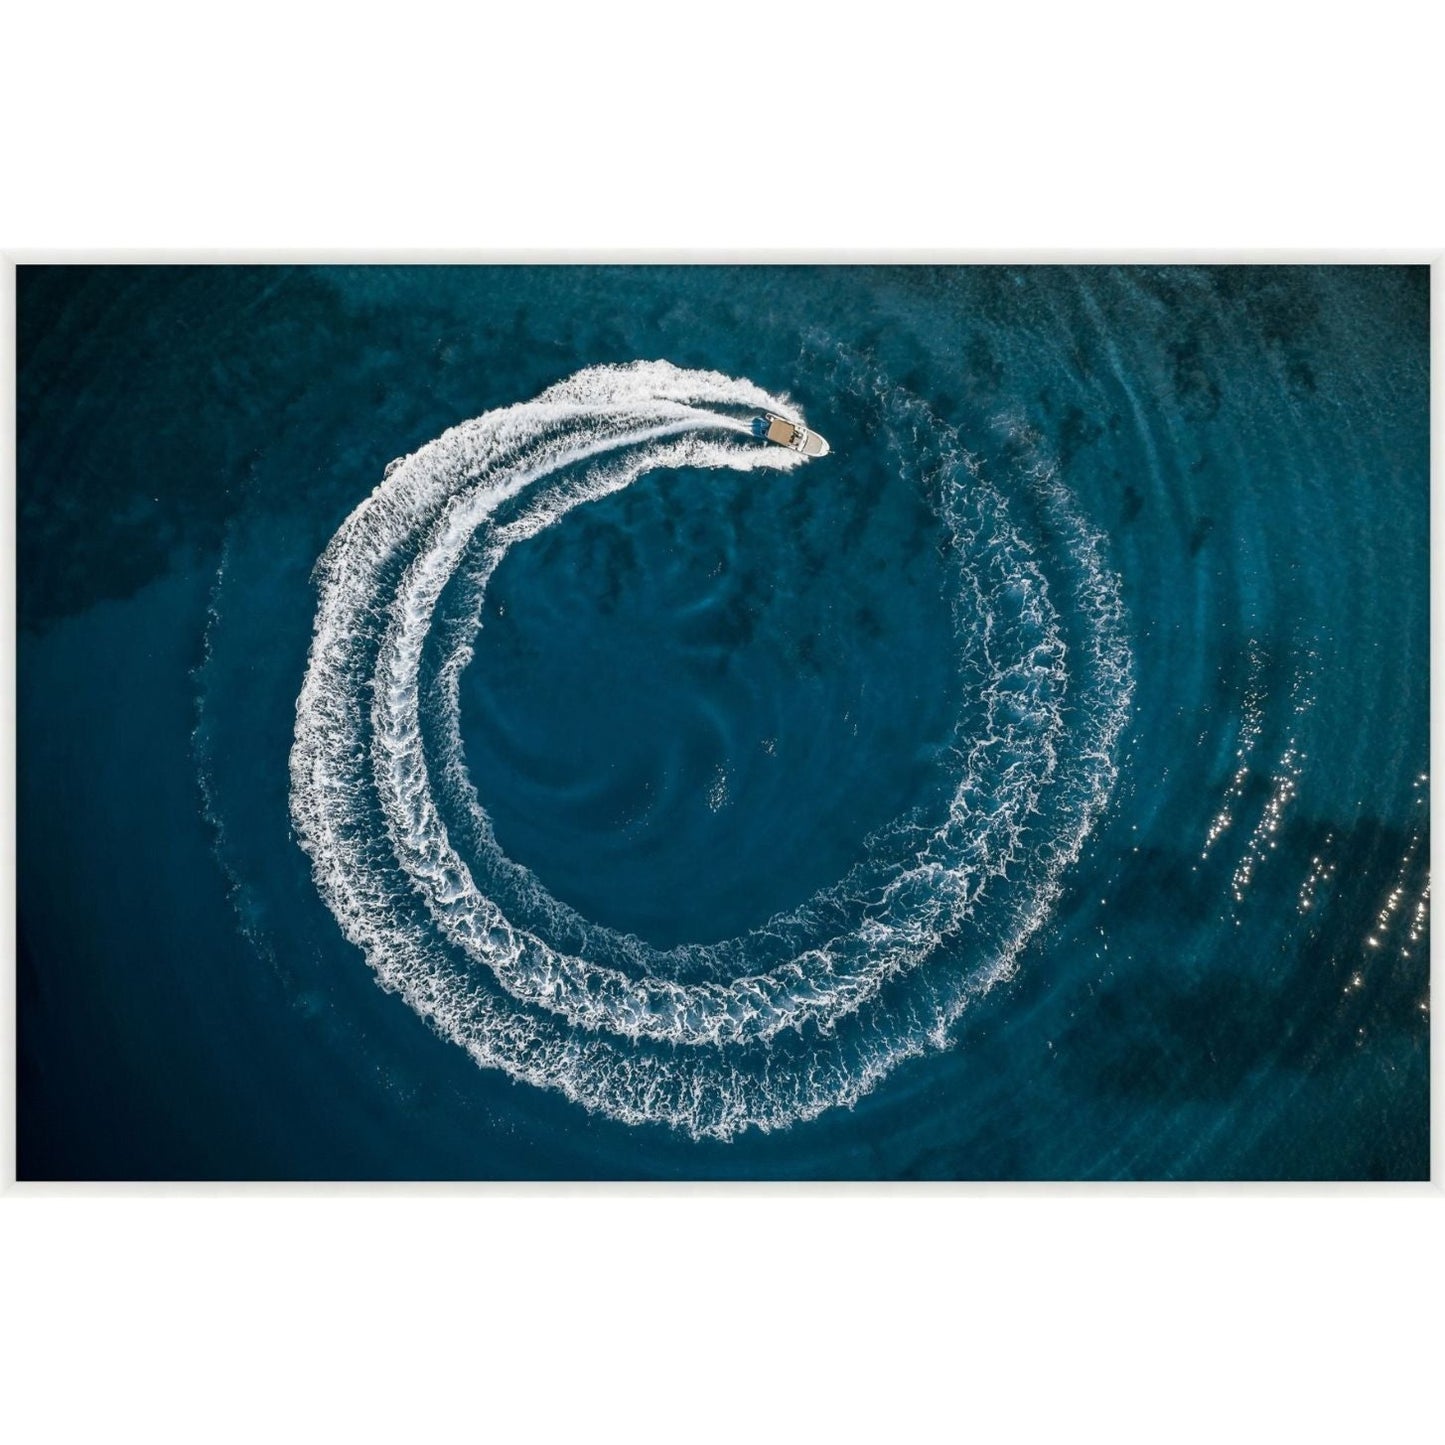 Seas circling